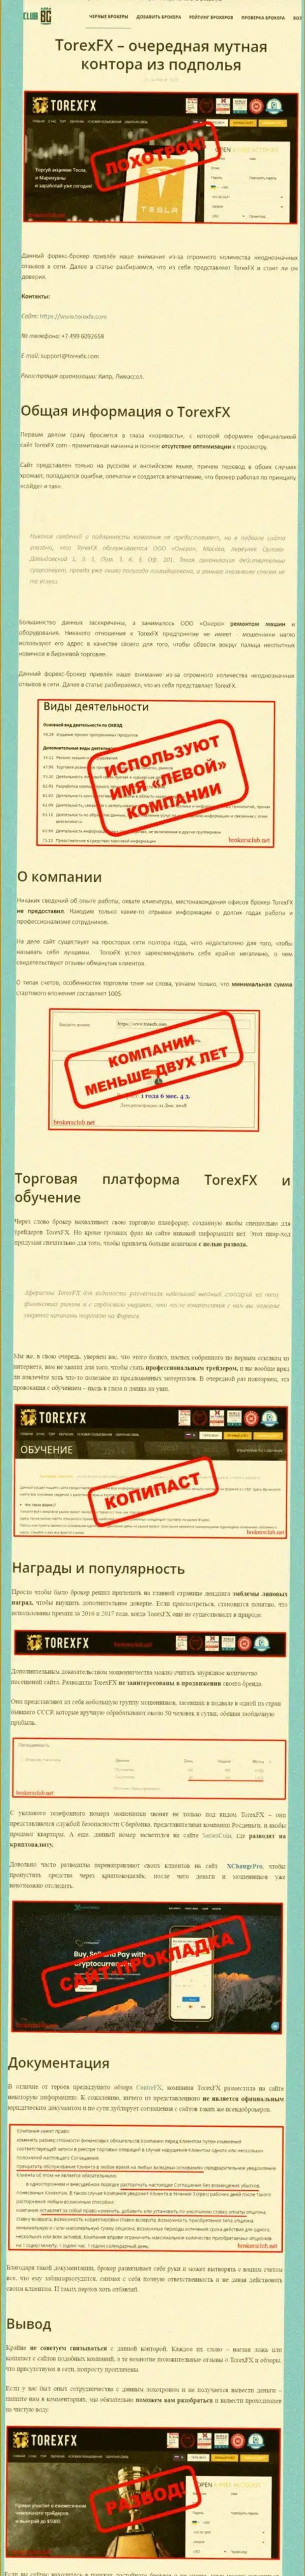 О вложенных в организацию TorexFX накоплениях можете позабыть, отжимают все до последнего рубля (обзор противозаконных деяний)